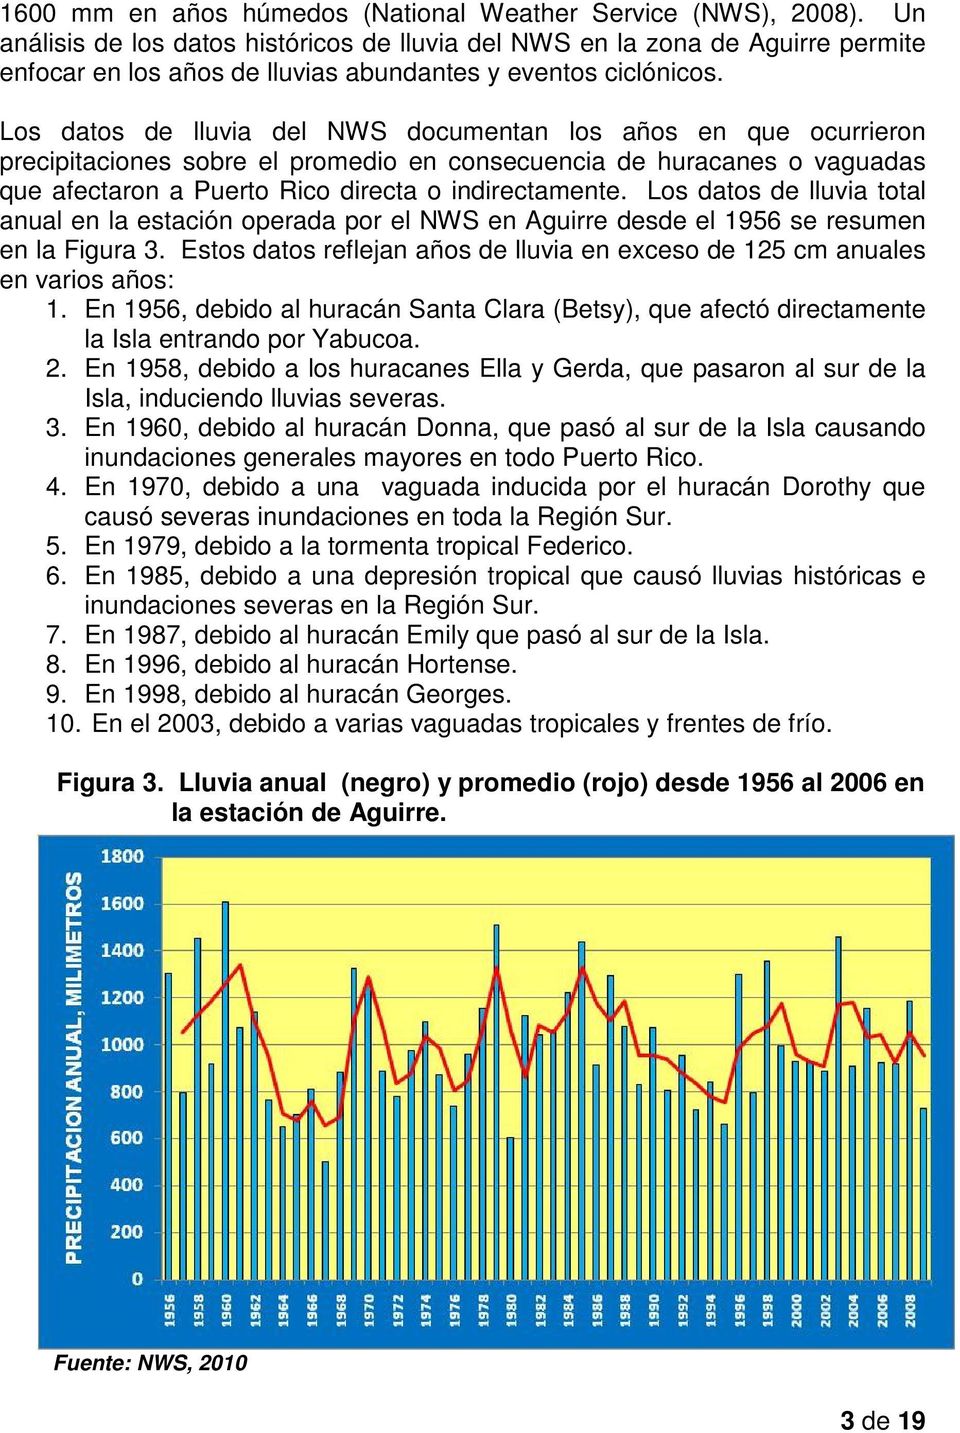 Los datos de lluvia del NWS documentan los años en que ocurrieron precipitaciones sobre el promedio en consecuencia de huracanes o vaguadas que afectaron a Puerto Rico directa o indirectamente.